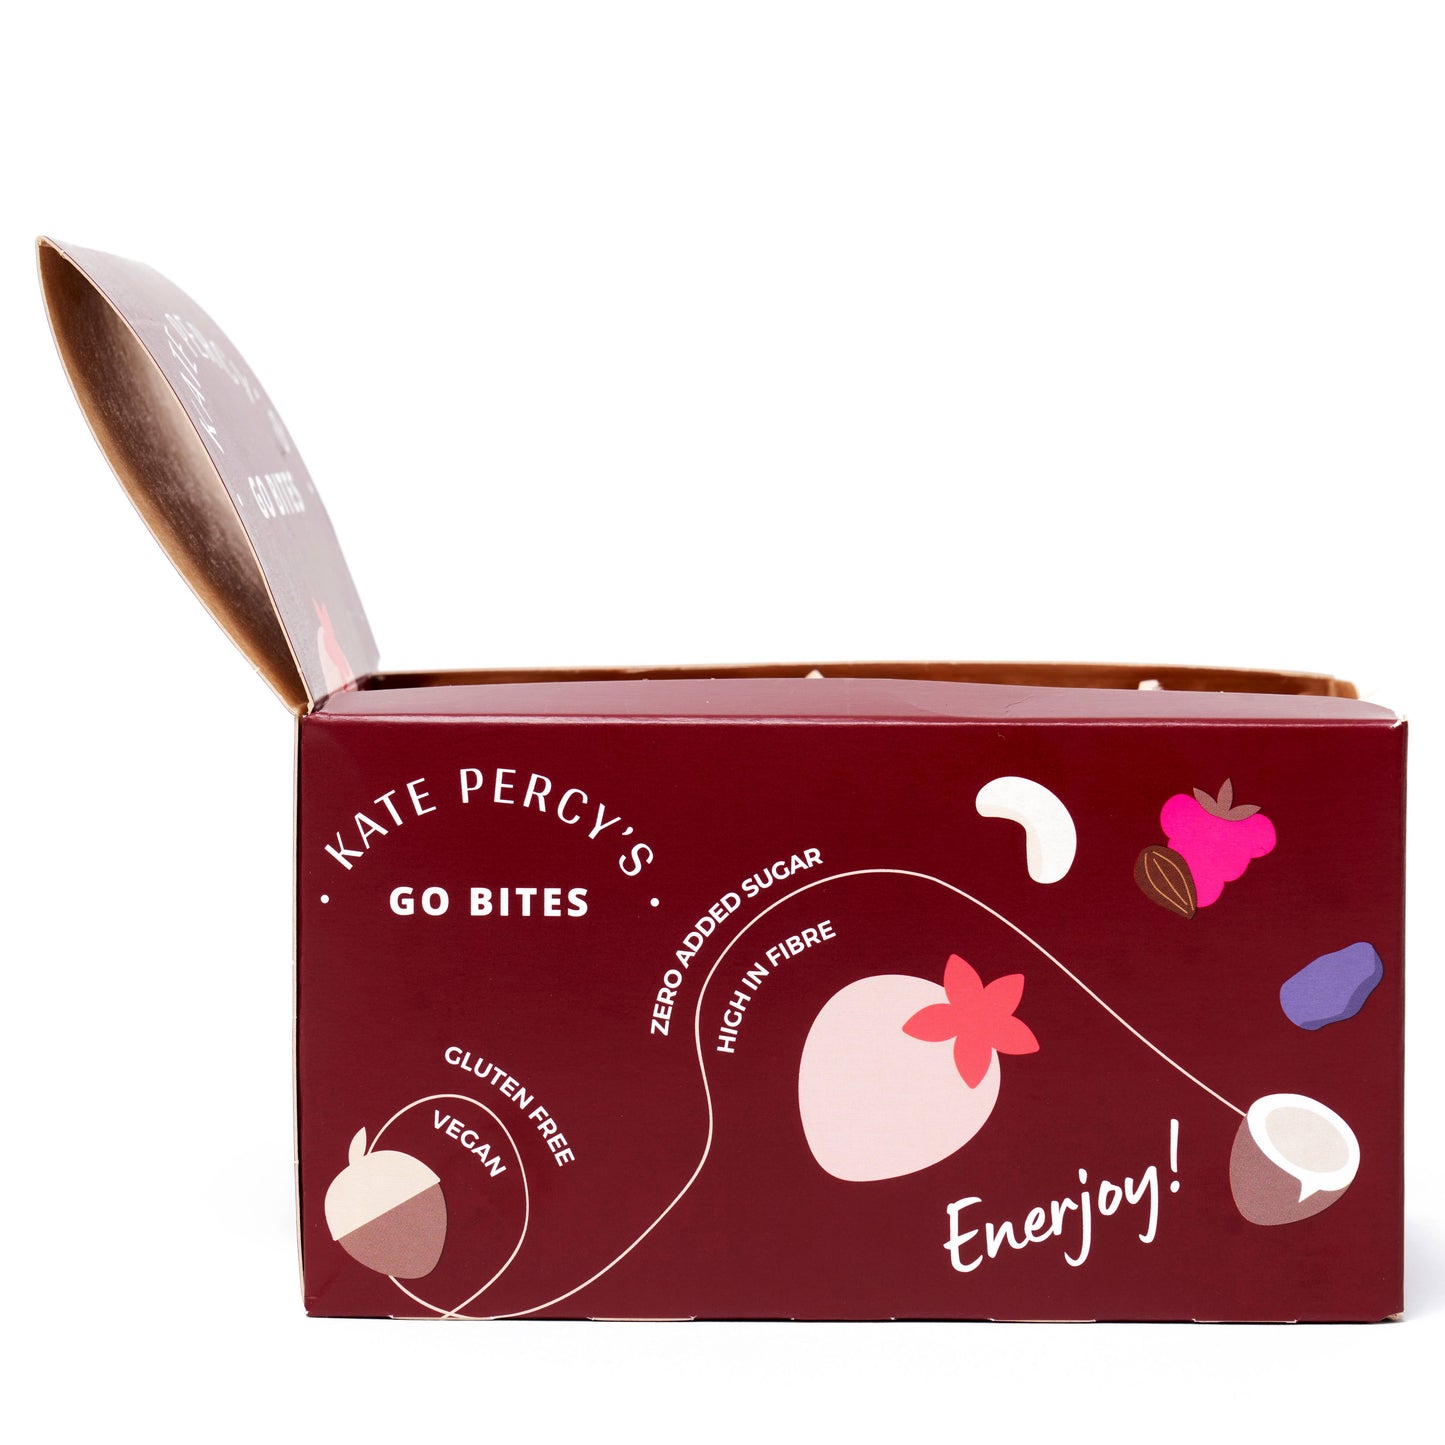 Kate Percy's Go Bites Hazelnut & Cacao